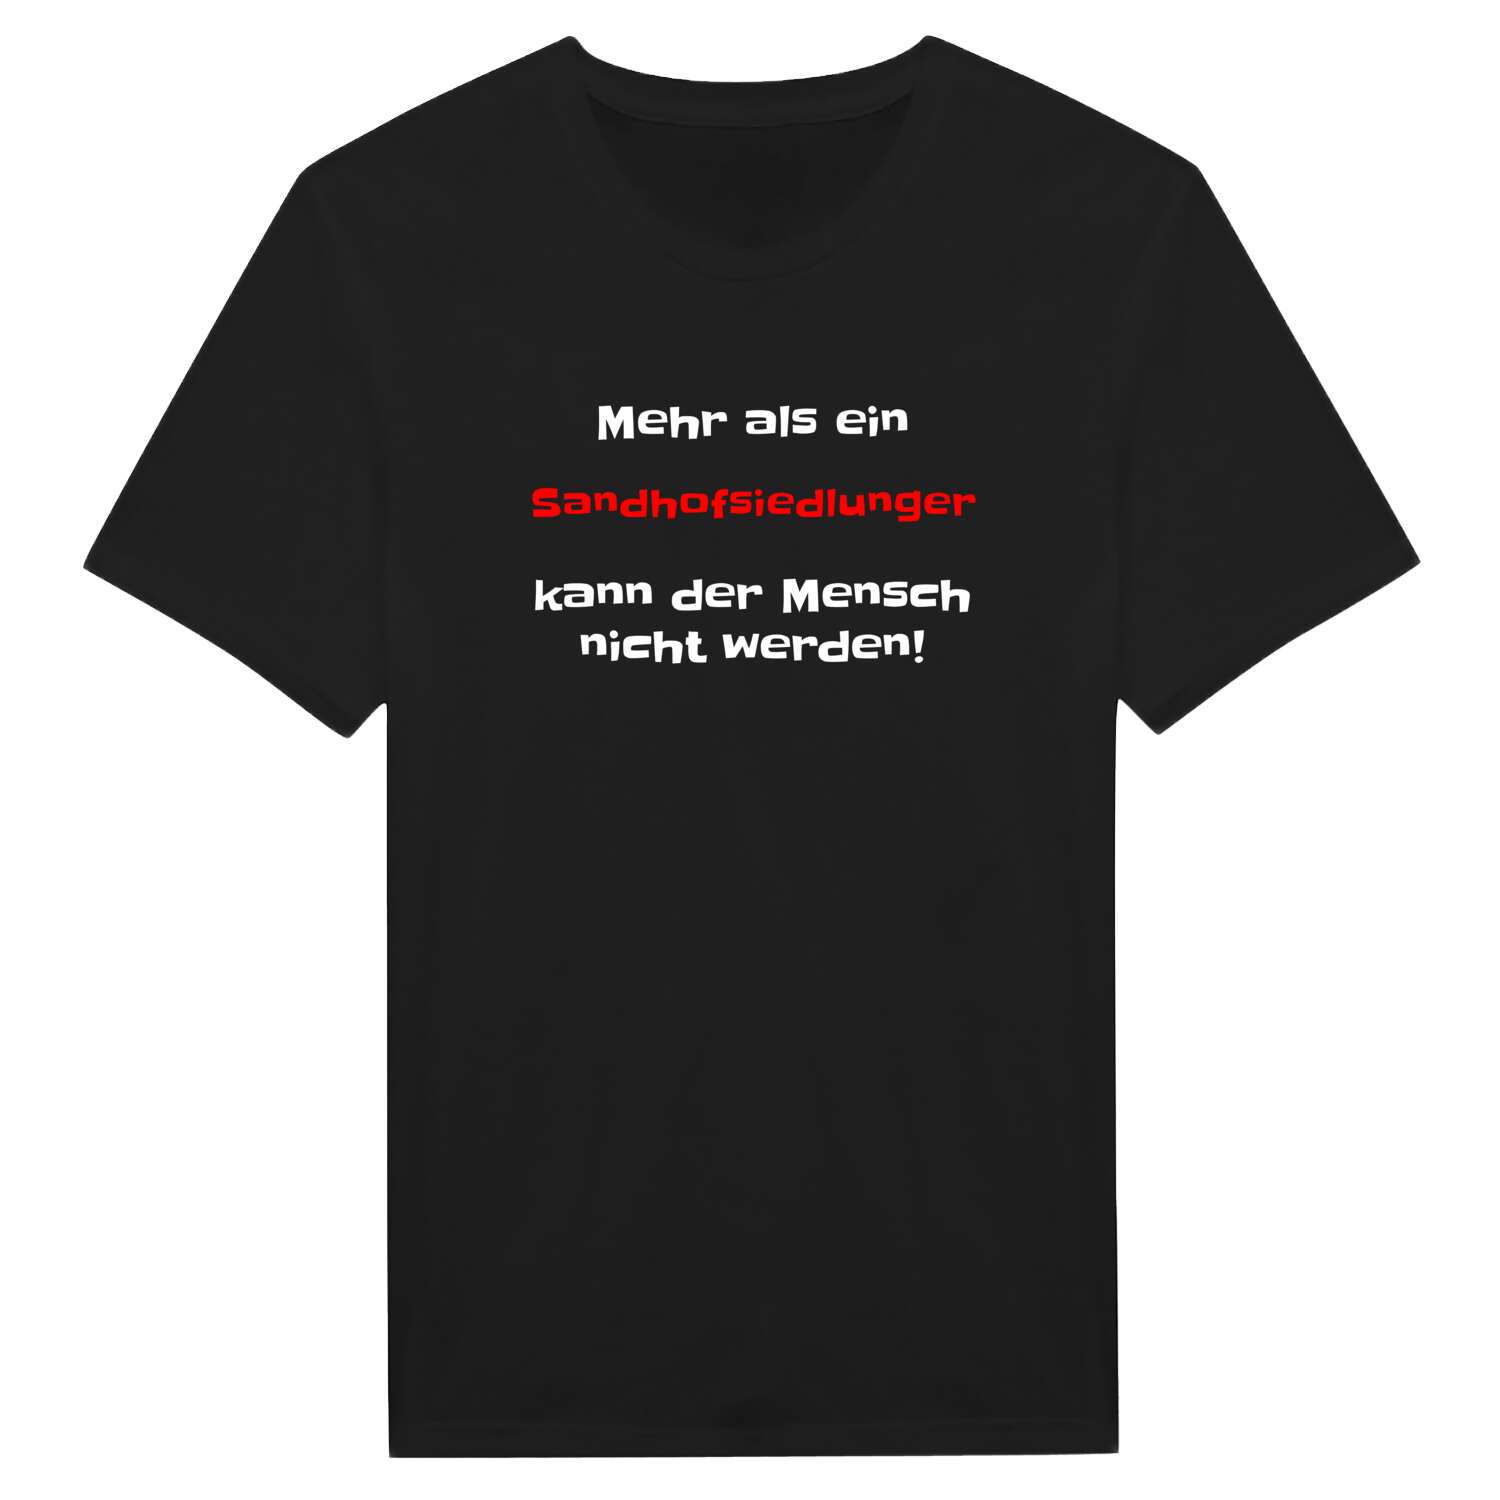 Sandhofsiedlung T-Shirt »Mehr als ein«